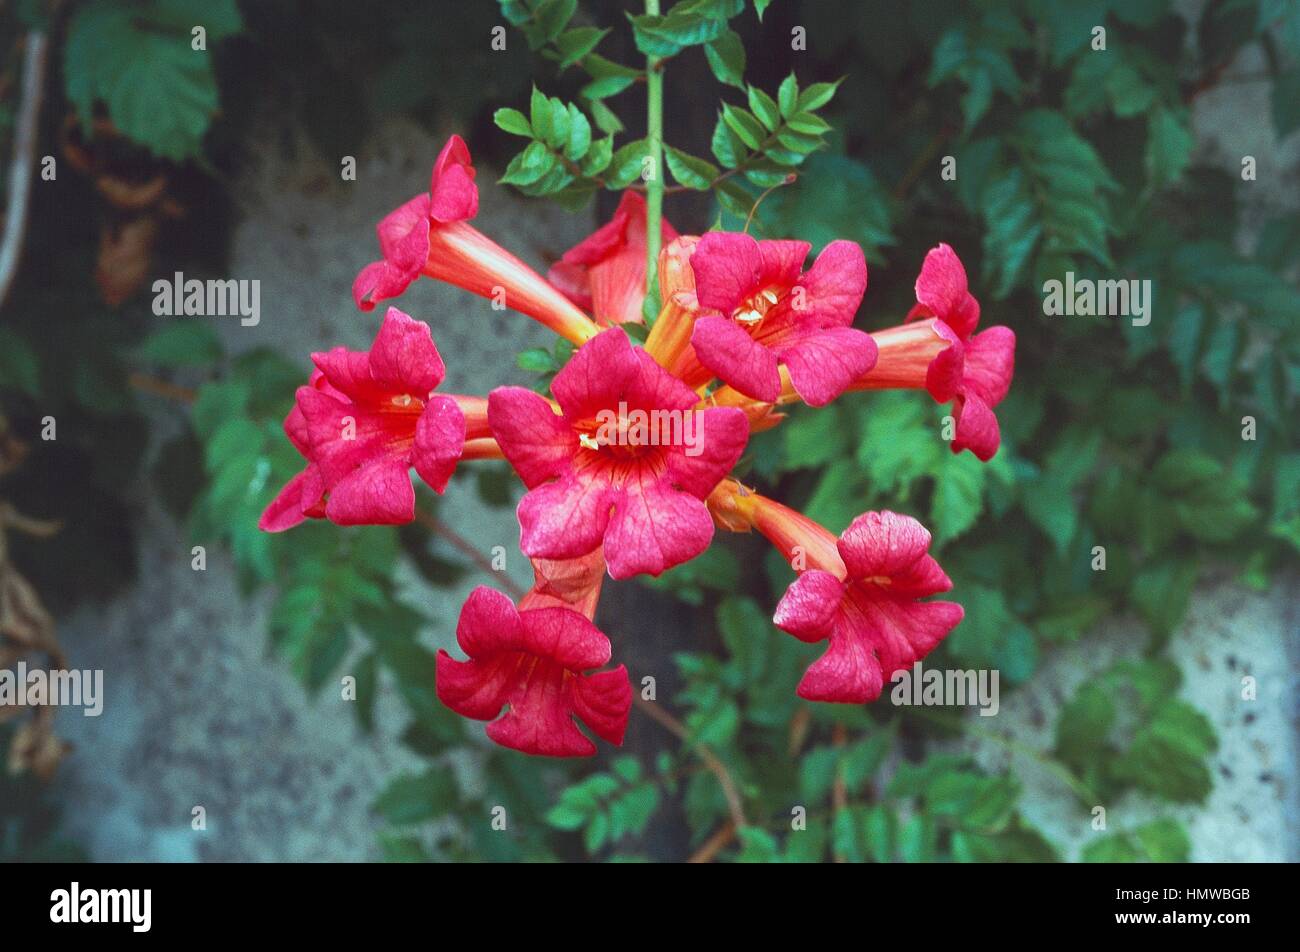 Campis tagliabuana Madame Glen, Bignoniaceae. Stock Photo